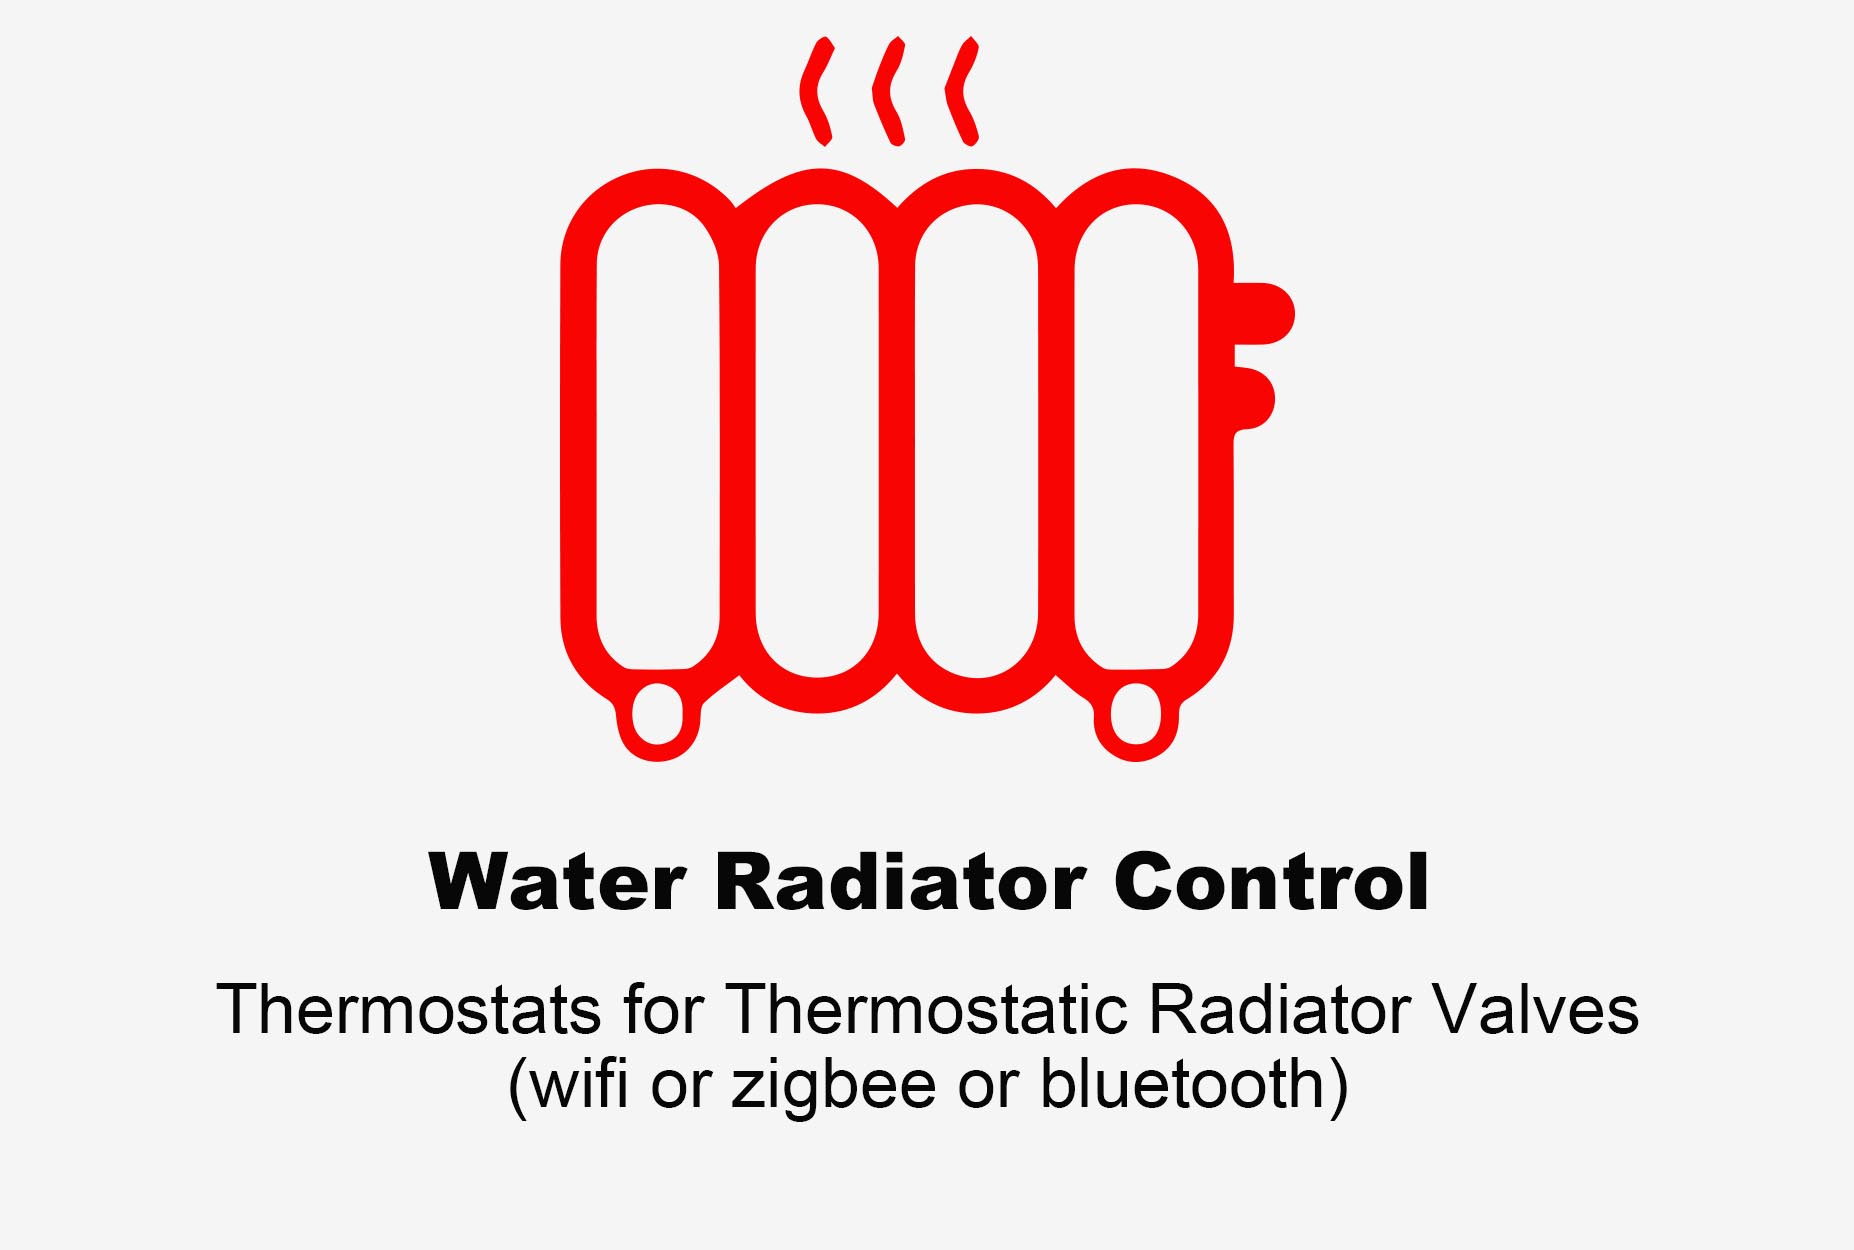 Thermsotat de radiateur d'eau, thermostat Bluetooth, thermostat de radiateur Zigbee, thermostat de radiateur Wifi